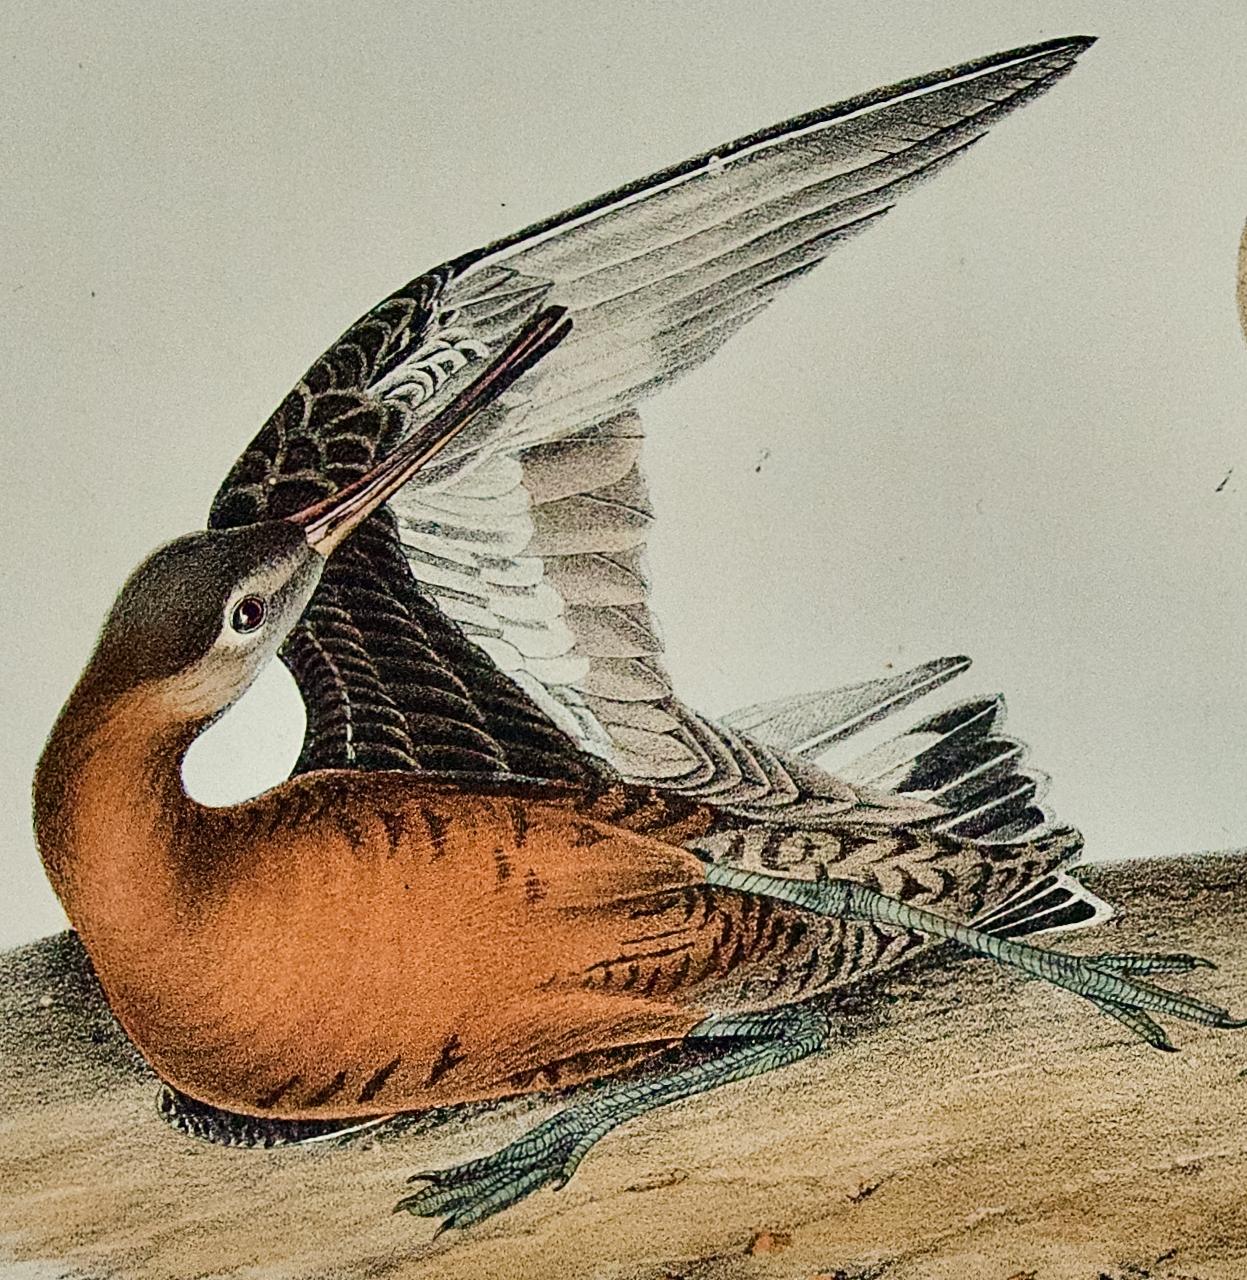 Handkolorierte Vogellithographie von Hudsonian Godwit, 19. Jahrhundert, 1. Octavo-Ausgabe von Audubon (Naturalismus), Print, von John James Audubon